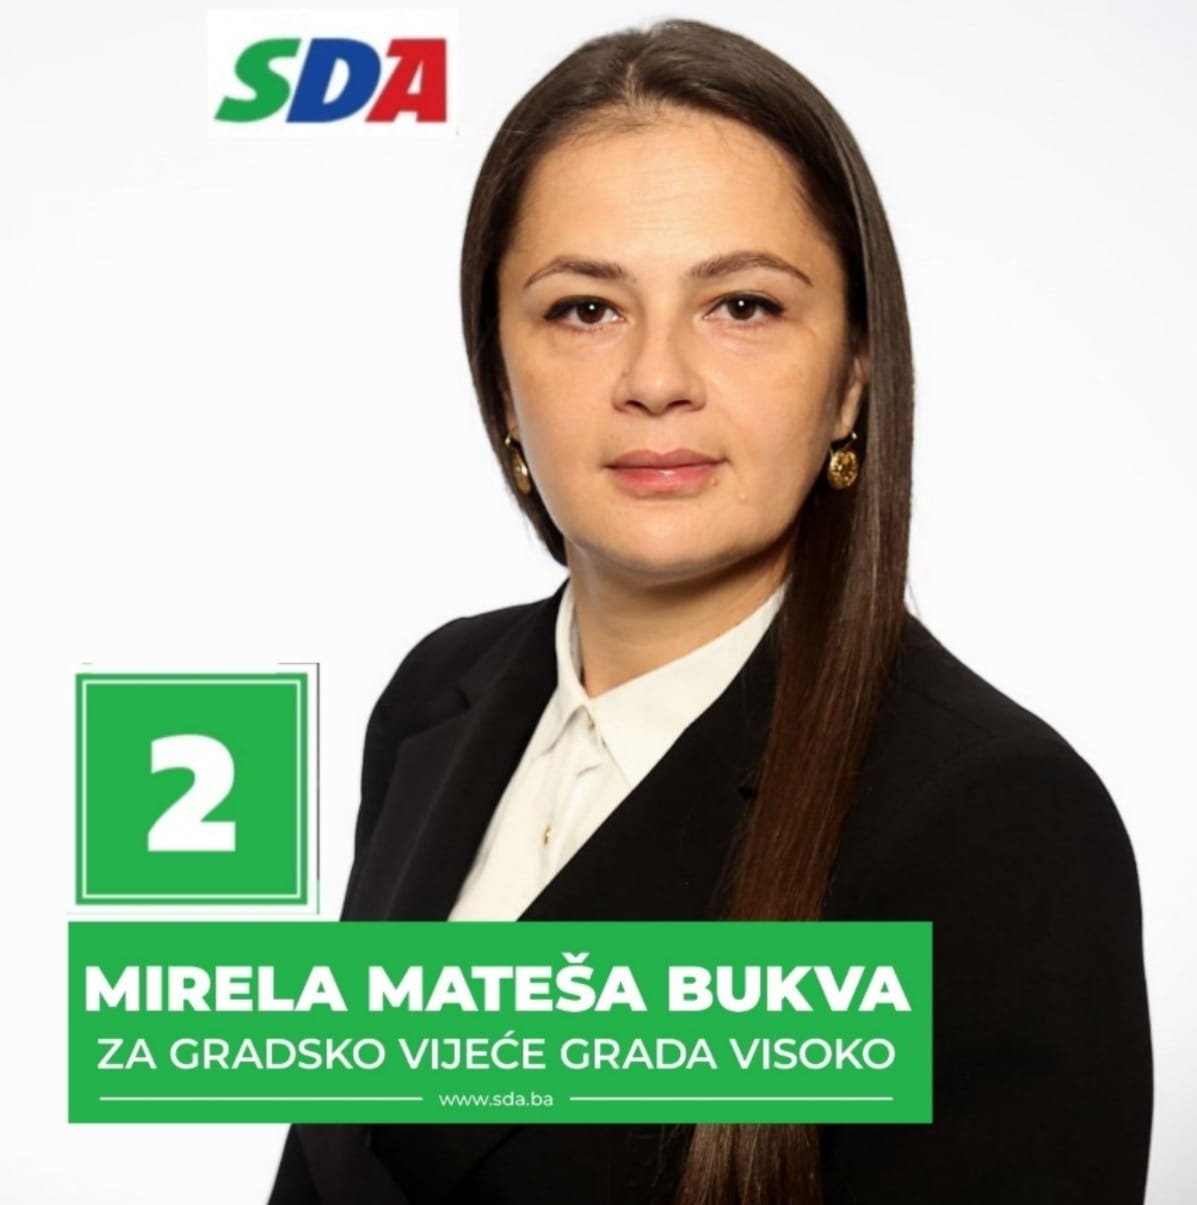 Mirela Mateša Bukva: Nakon brojnih razgovora i konsultacija, donijela sam odluku da ne prihvatim mandat u Gradskom vijeću Visoko